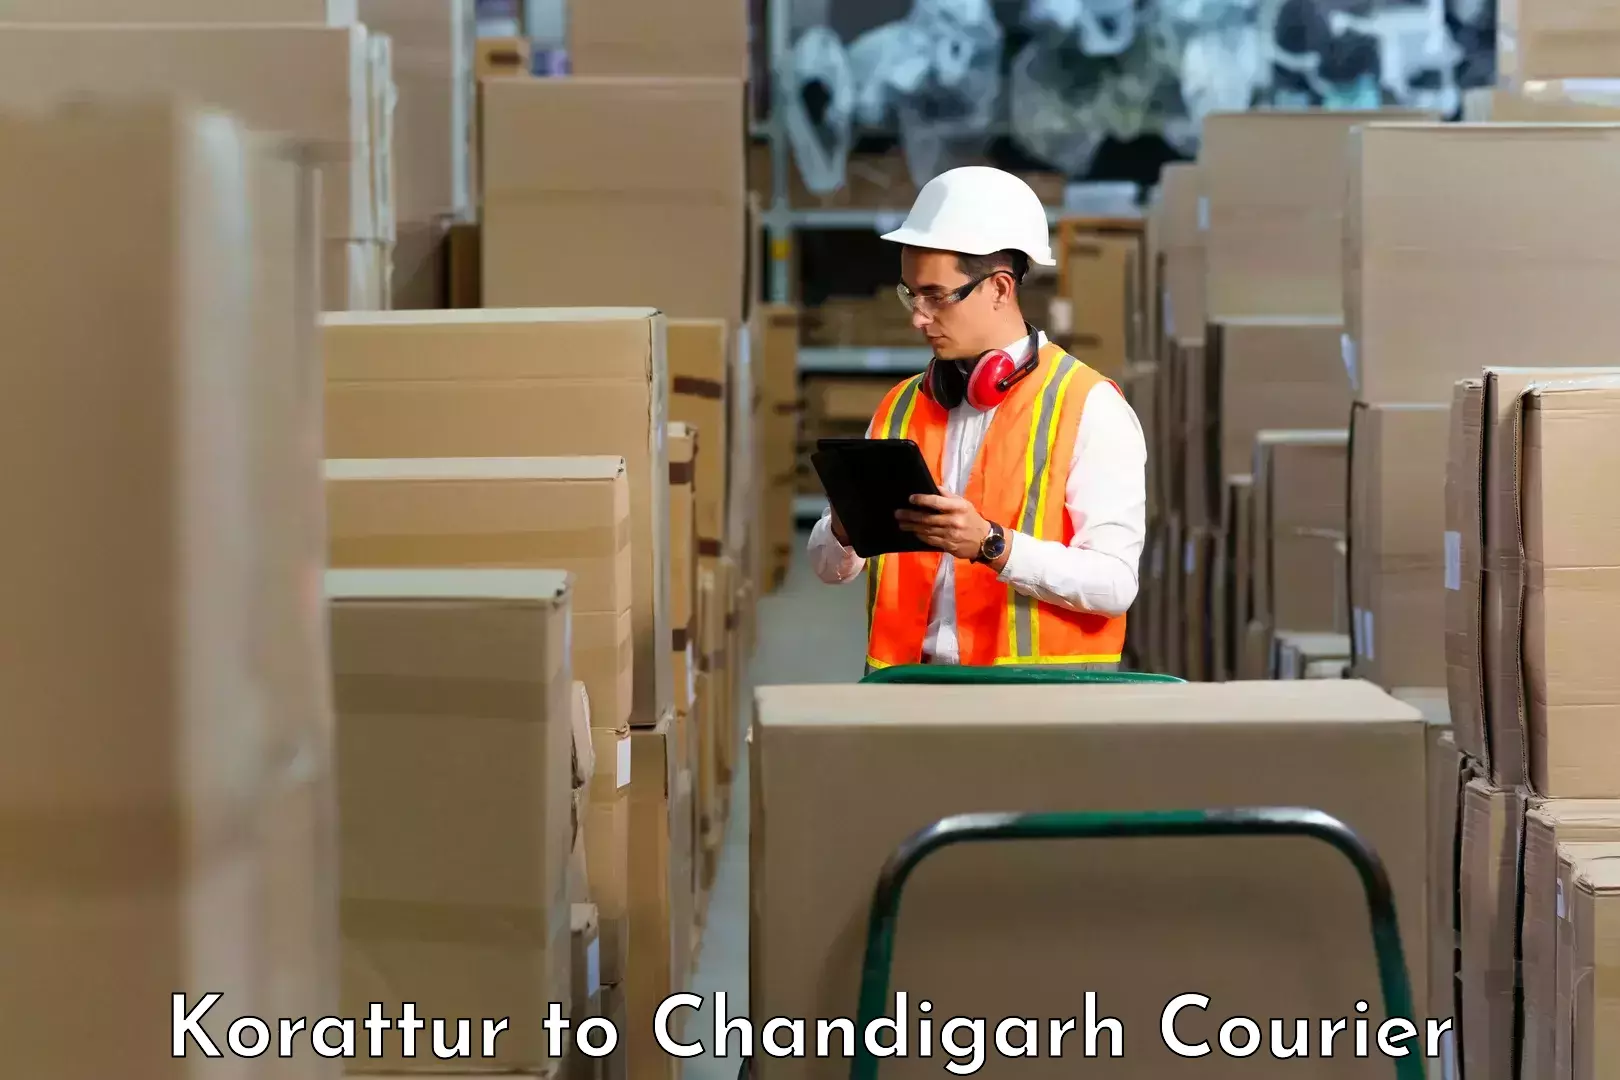 Courier service comparison Korattur to Chandigarh